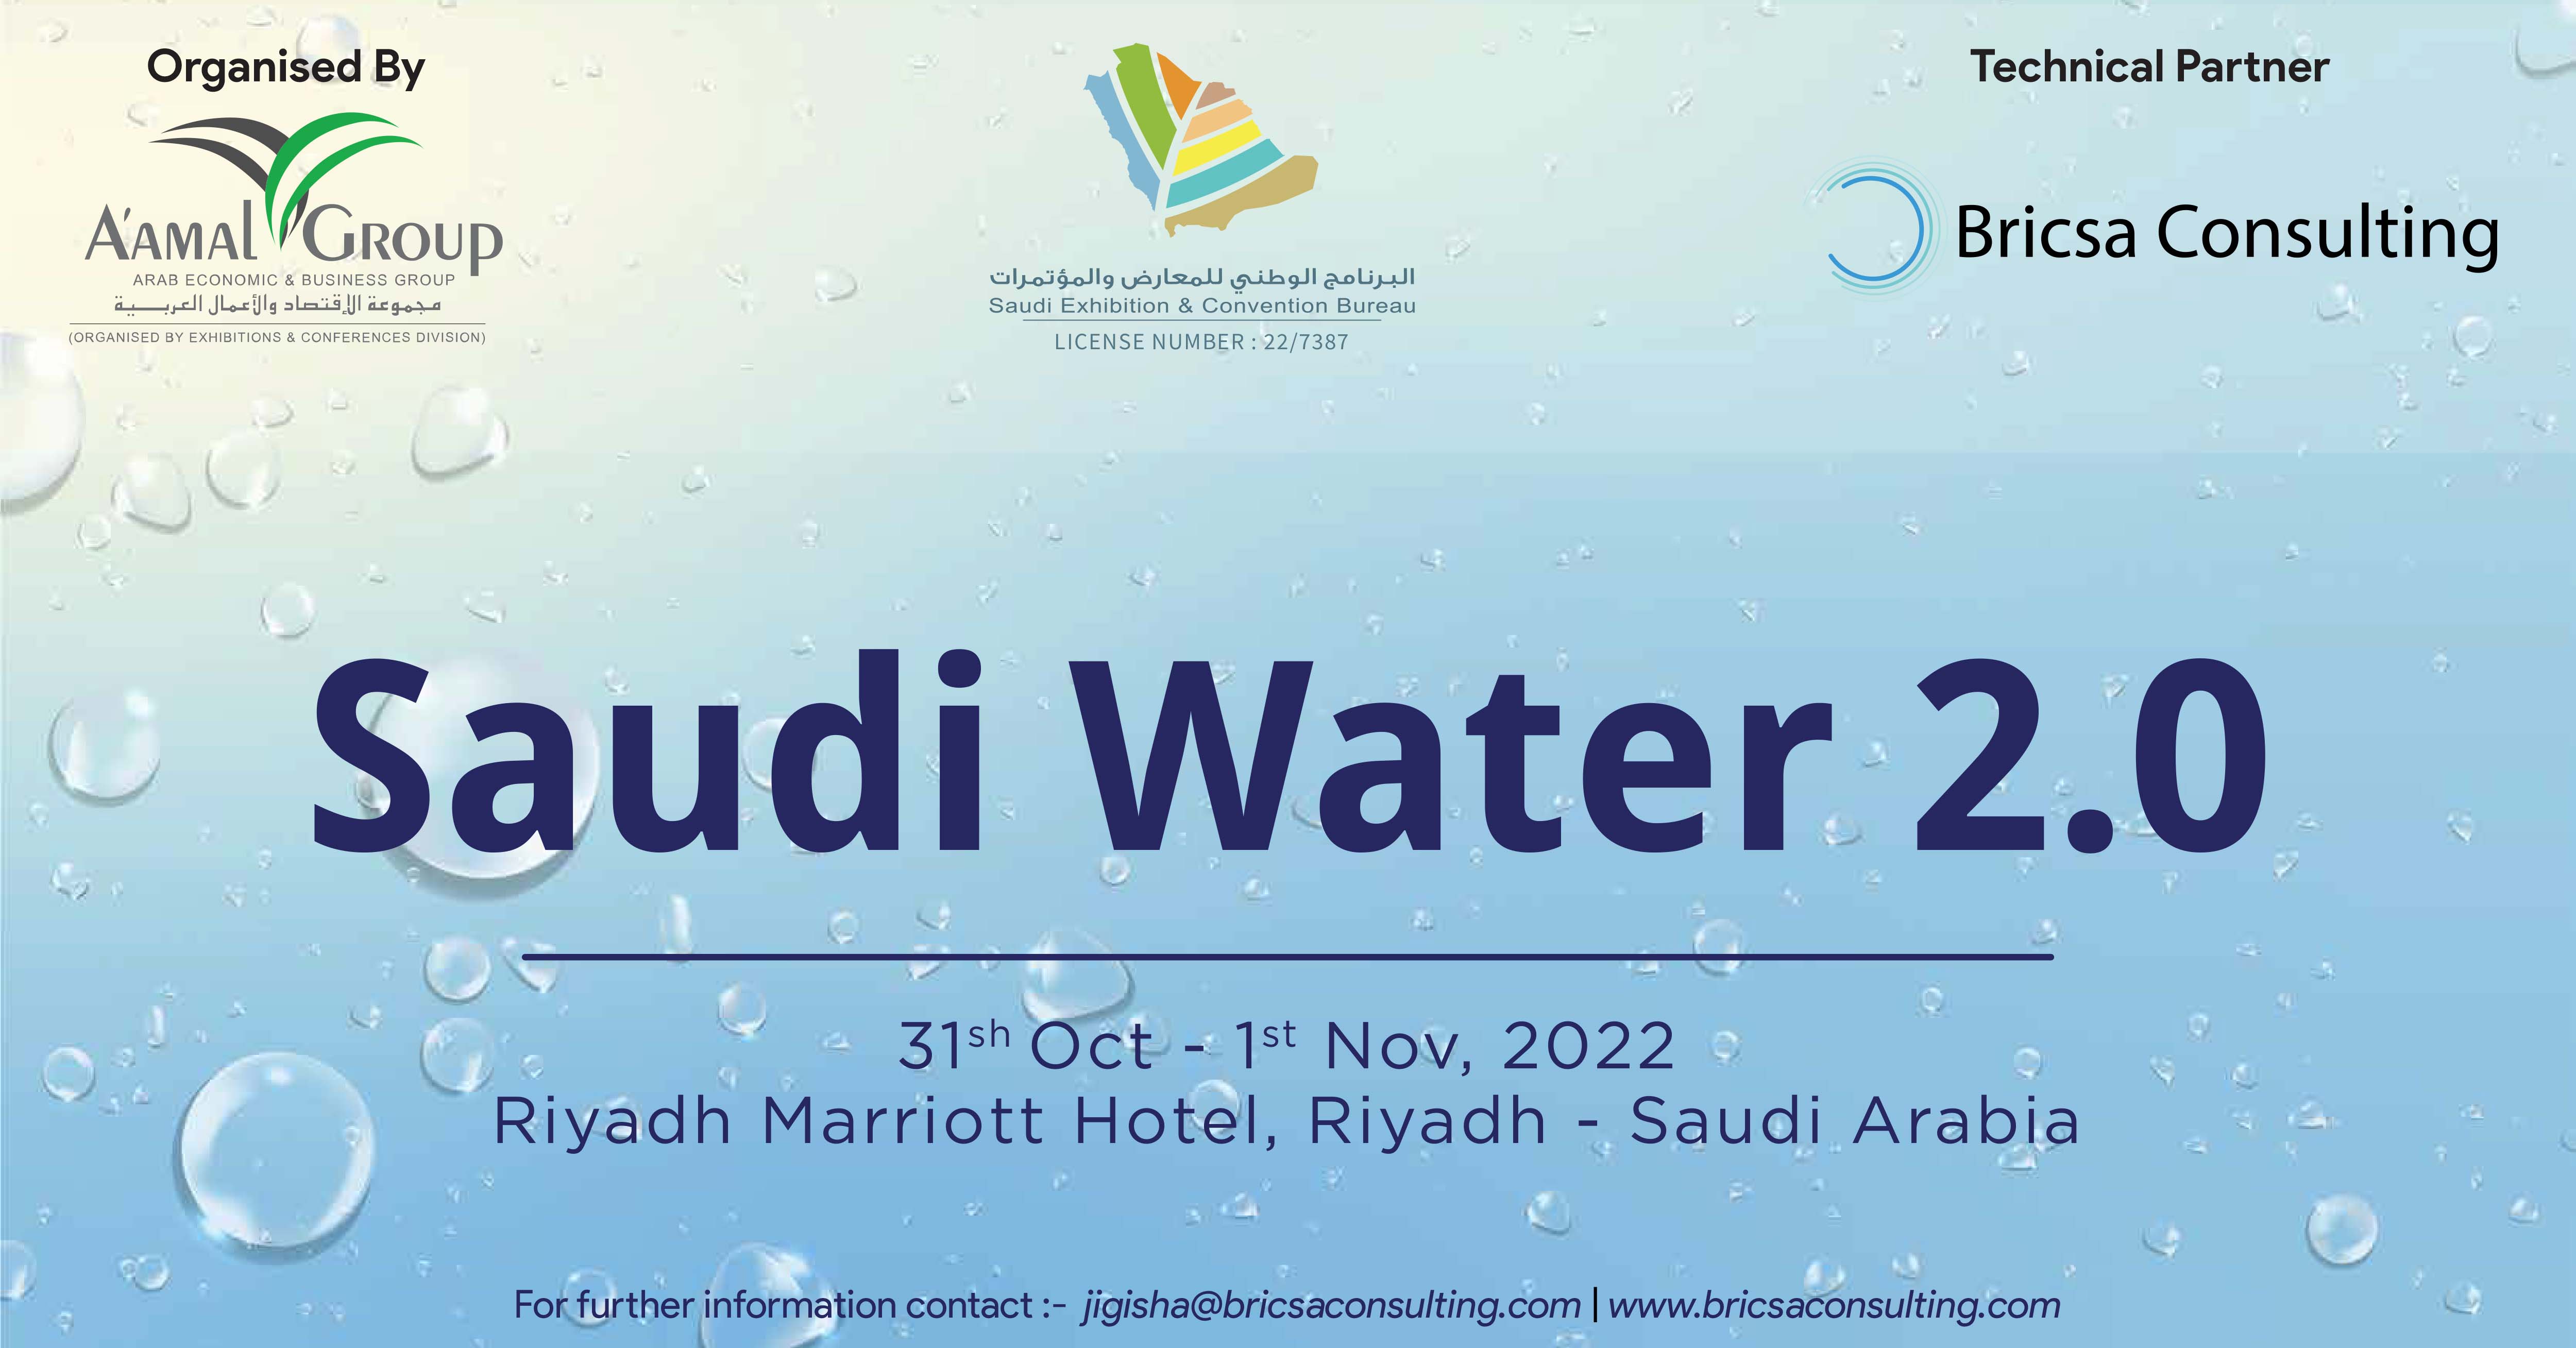 Saudi Water 2.0